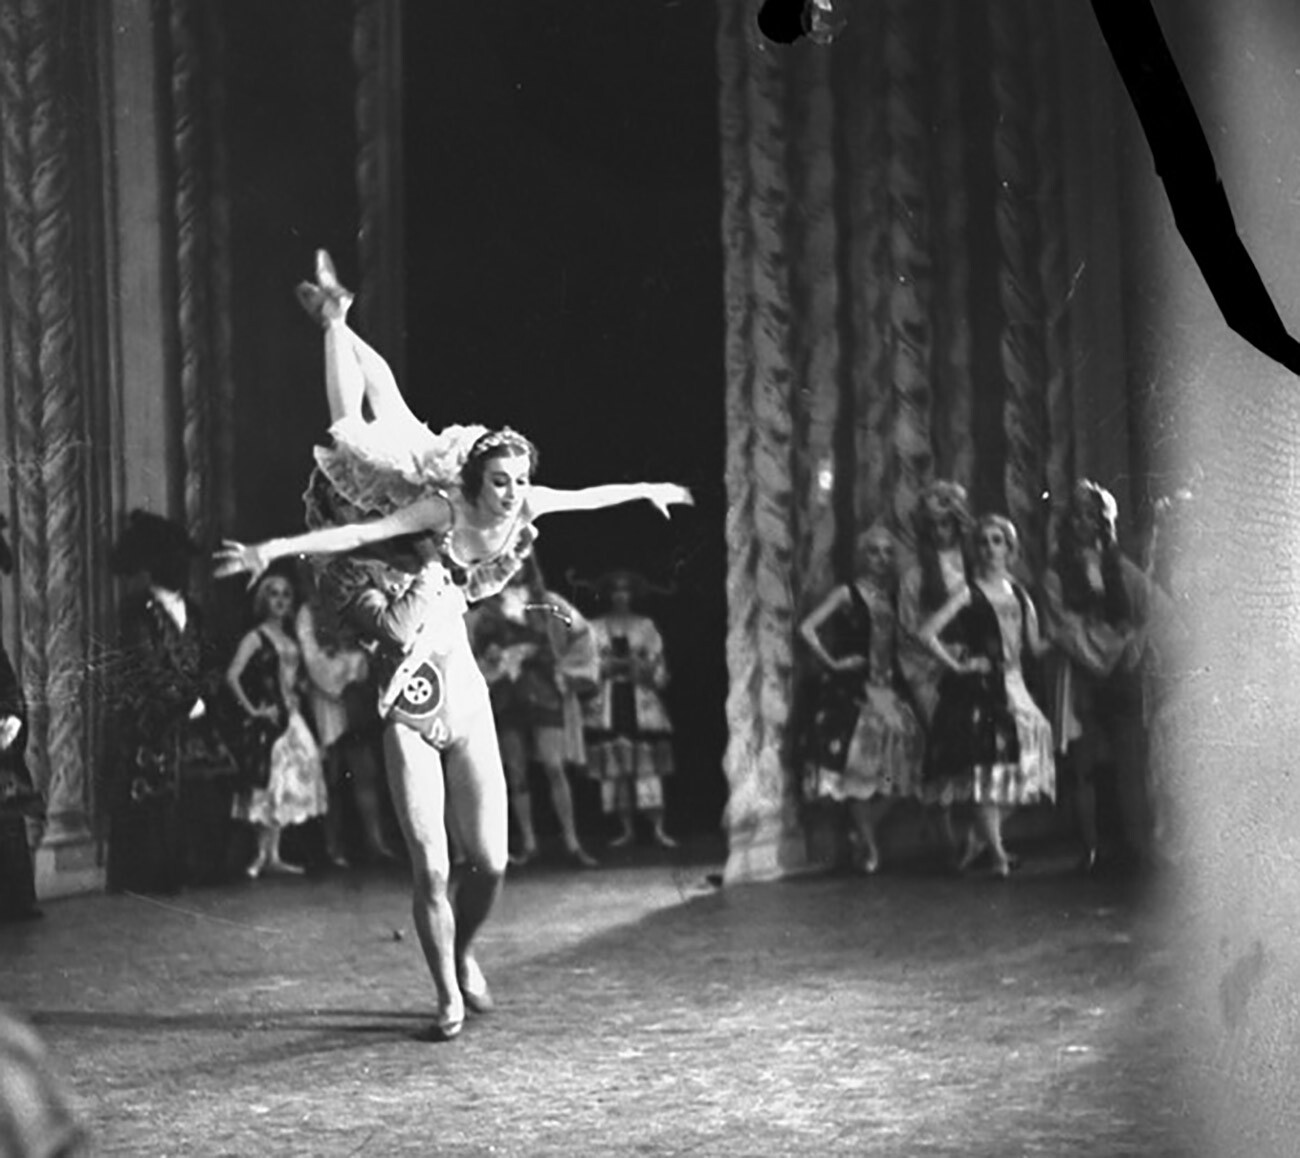 ロシアバレエ「眠れる森の美女」はいかにしてヨーロッパで初めて上演されたのか - ロシア・ビヨンド